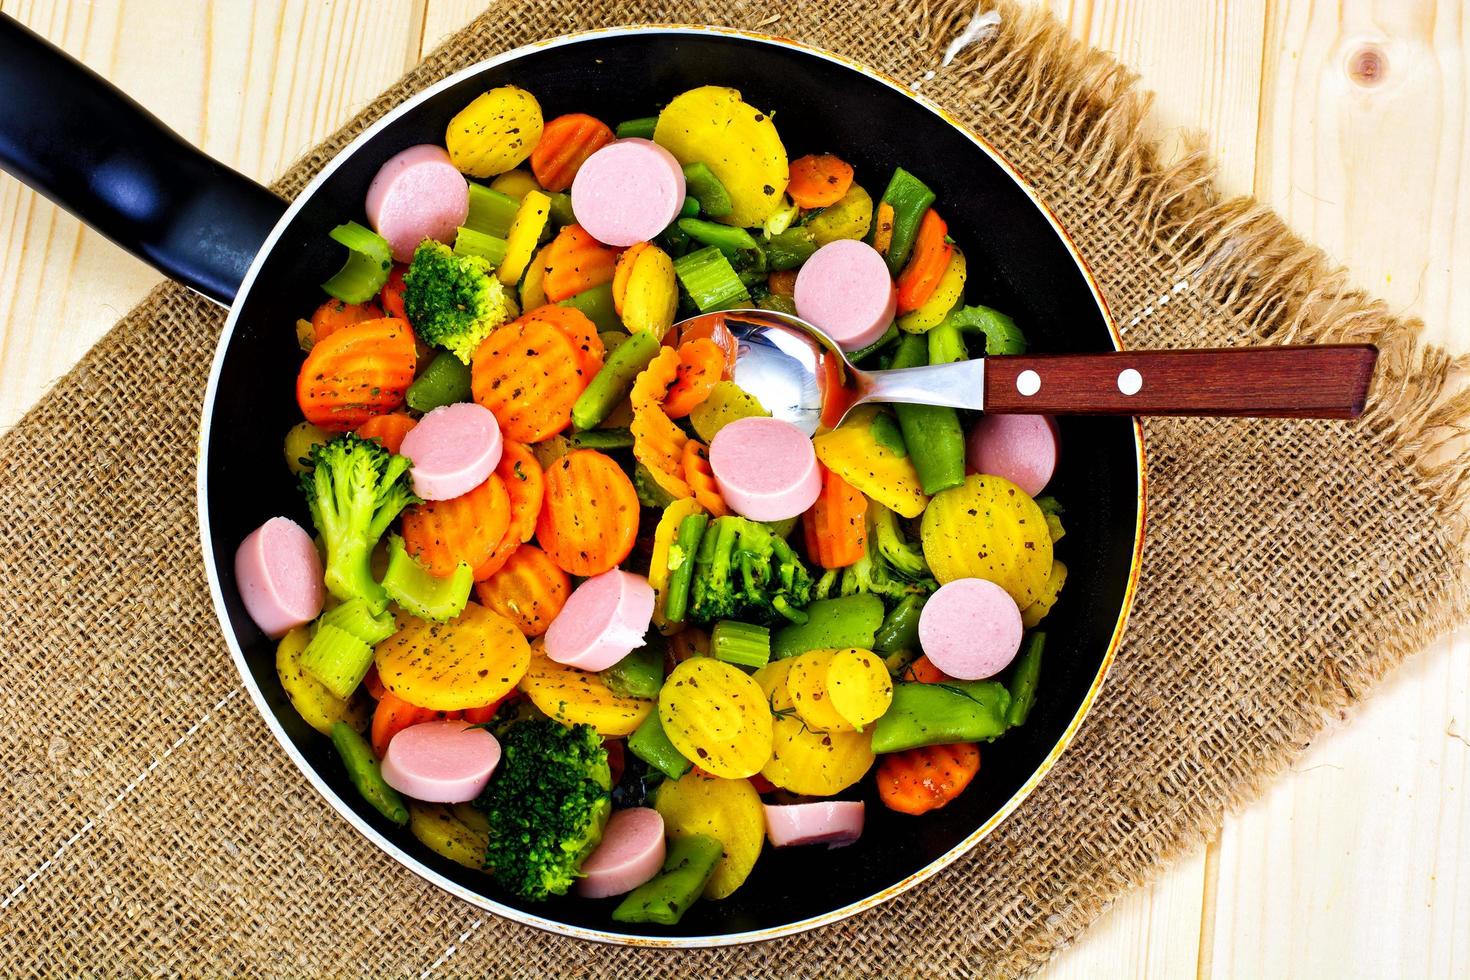 Verdure al vapore patate, carote e broccoli con salsiccia foto